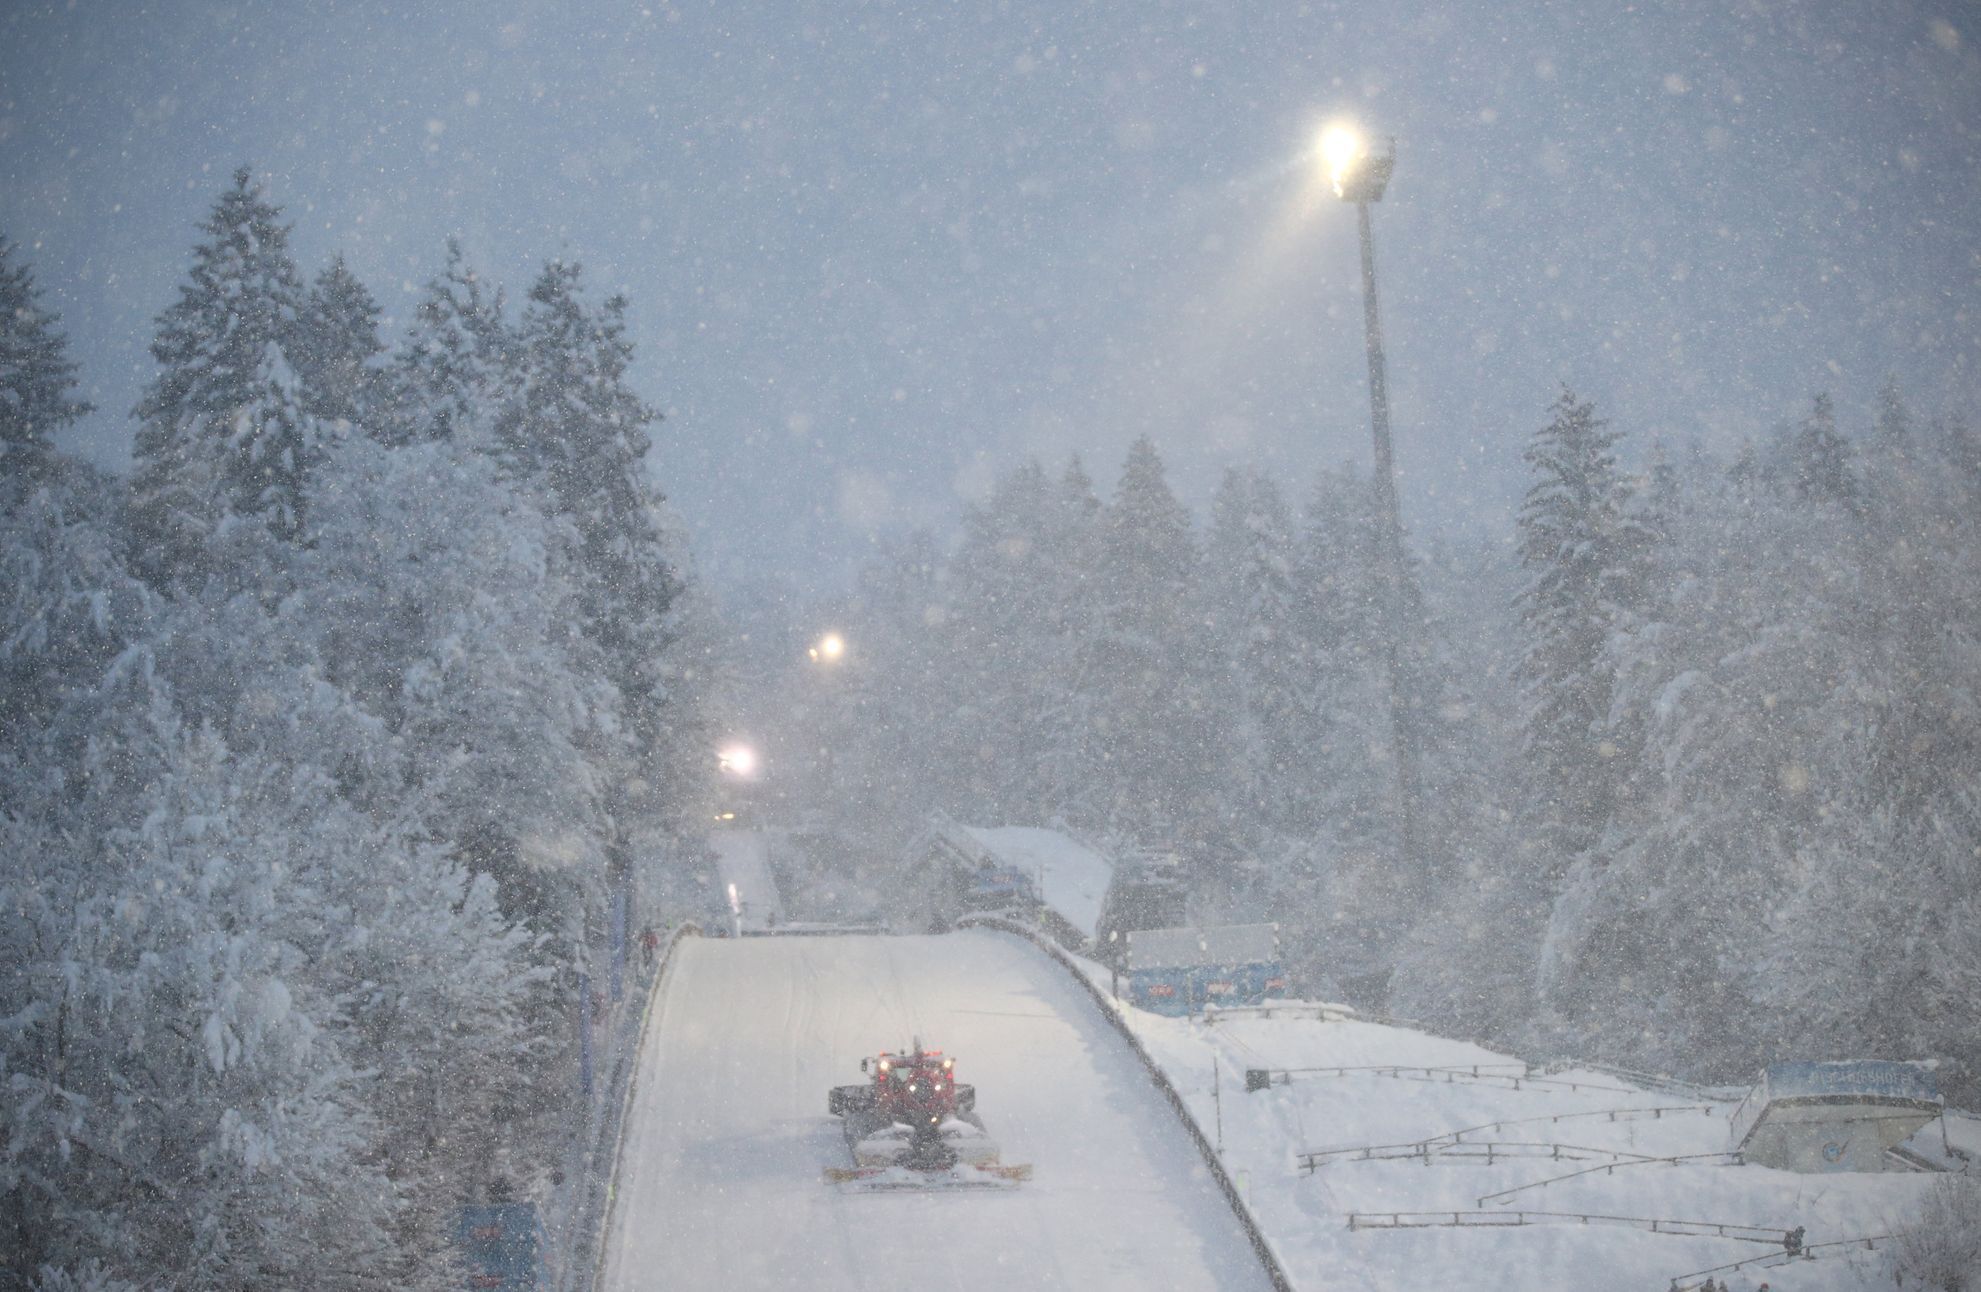 skony na lyžích, Turné čtyř můstků 2018/2019, sněžení v Bischofshofenu